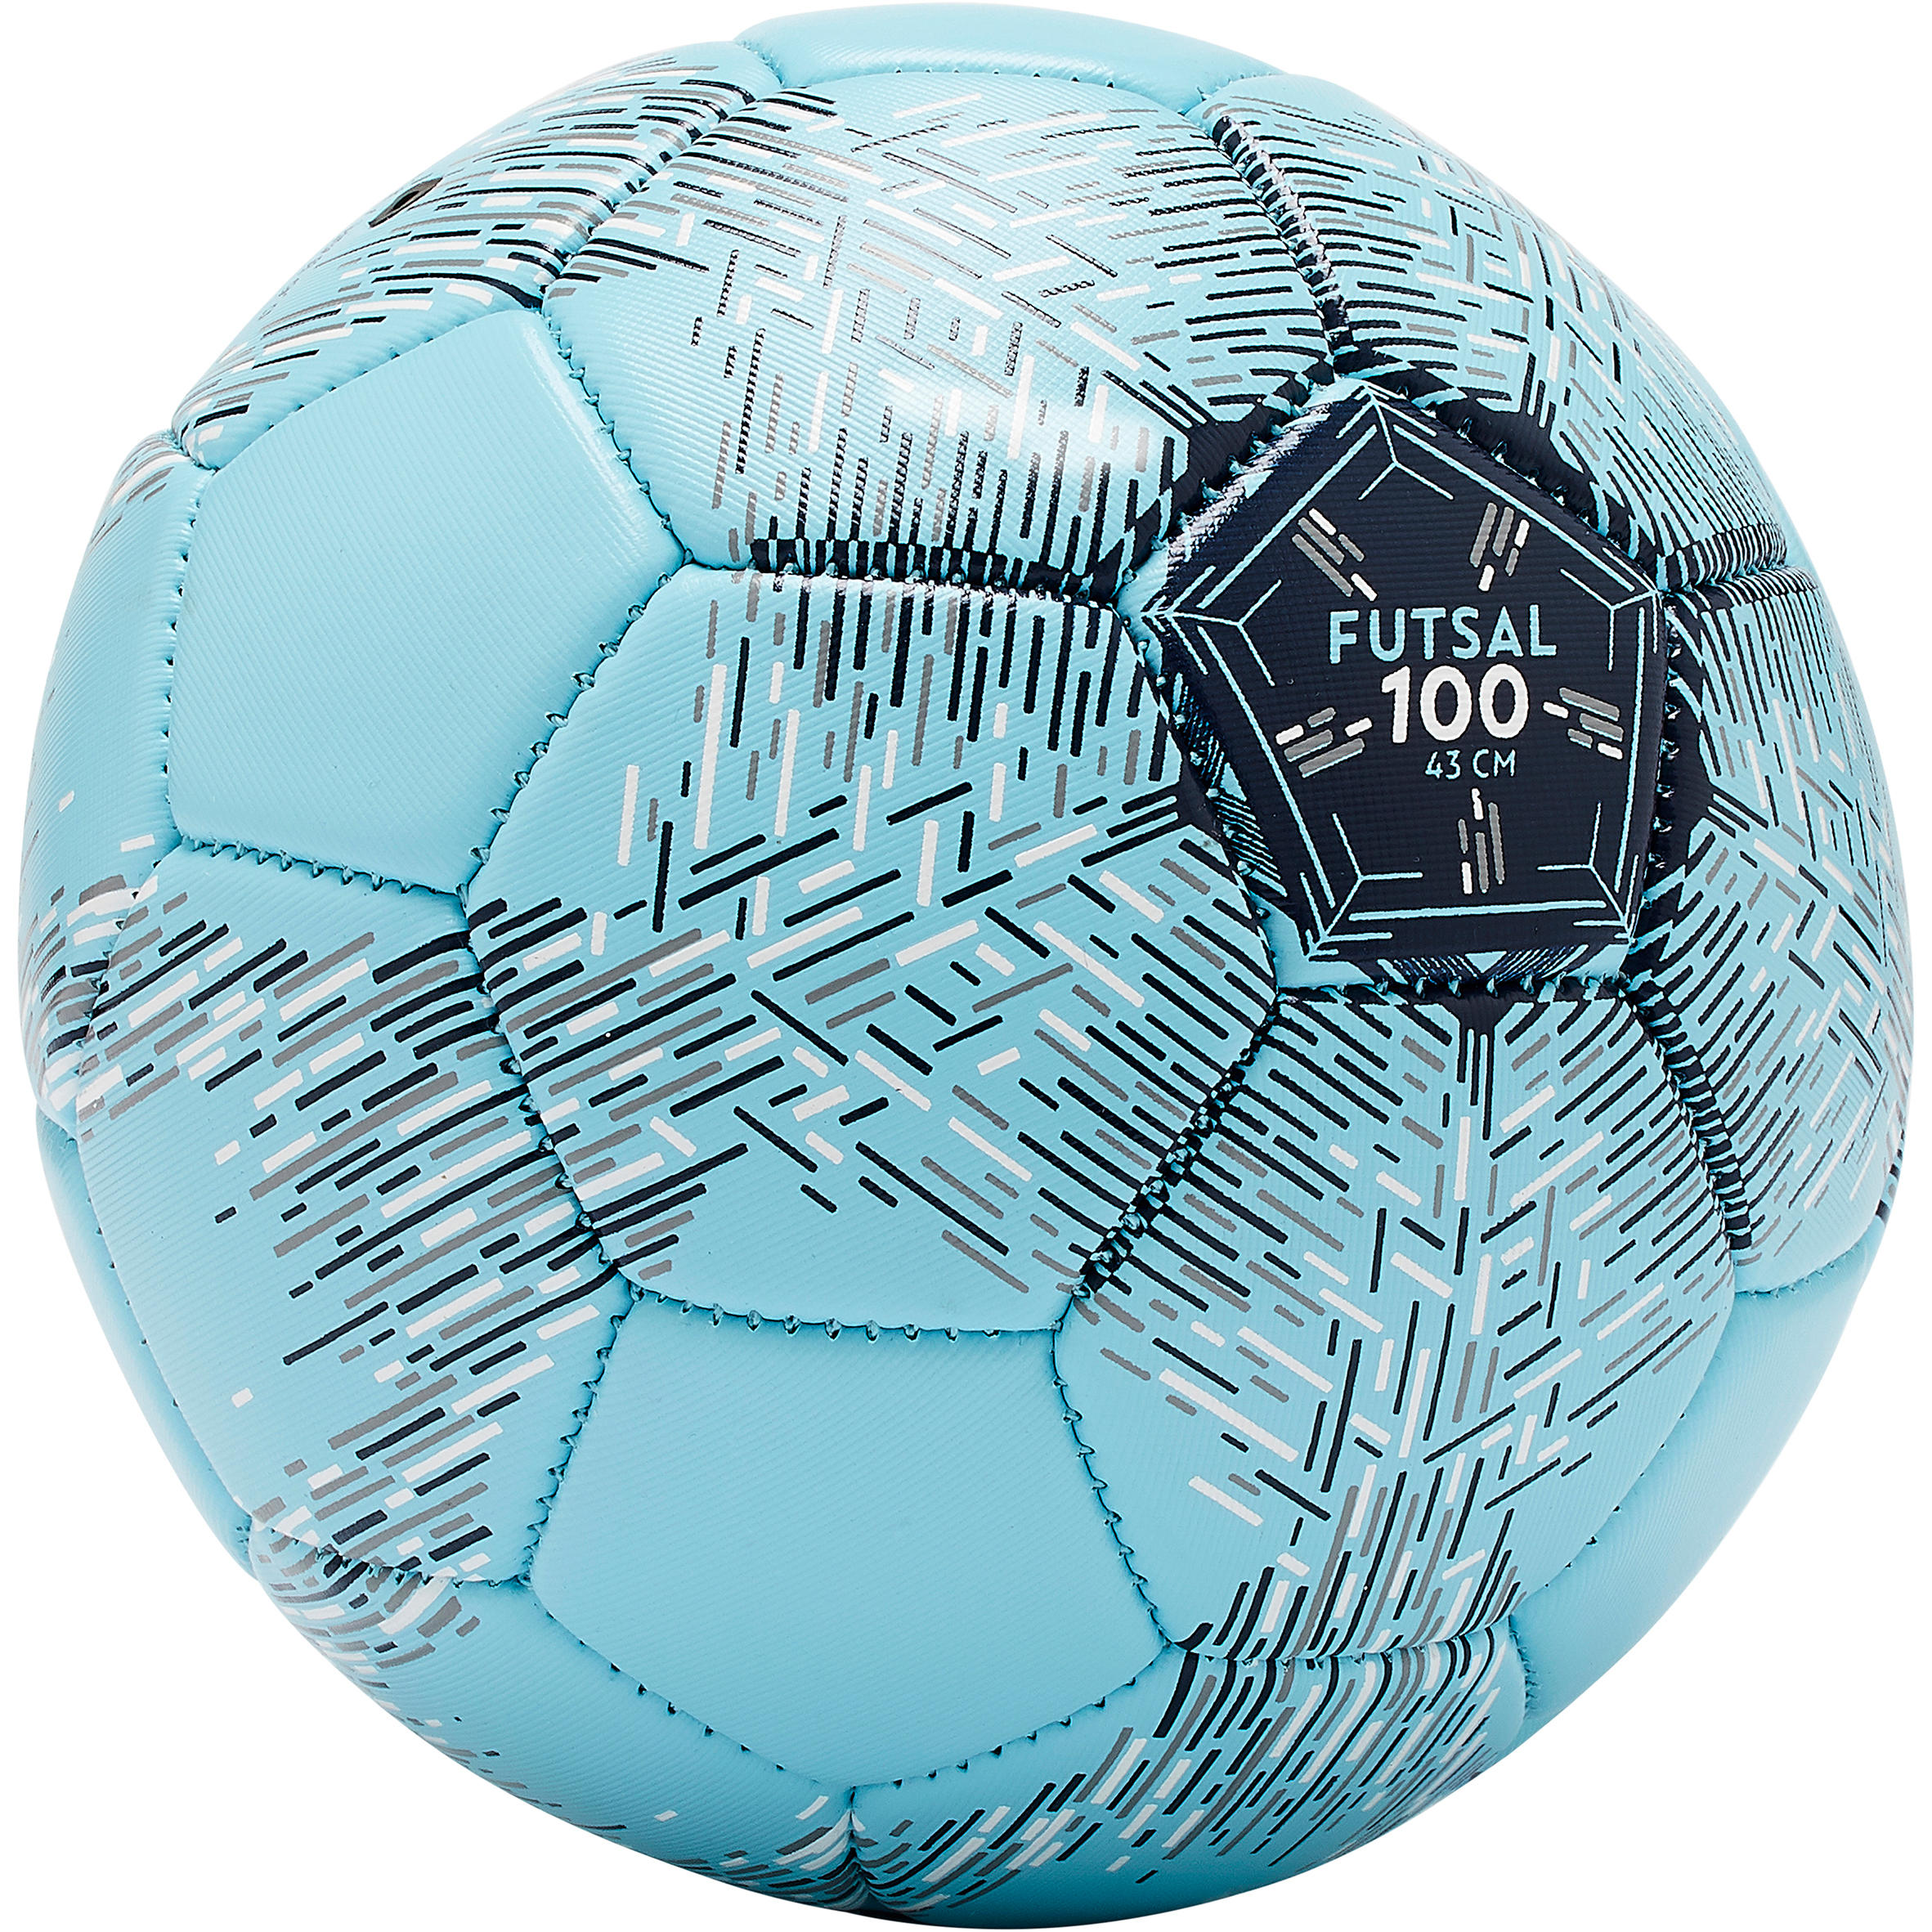 KIPSTA Futsalová lopta FS100 43 cm (veľkosť 1)